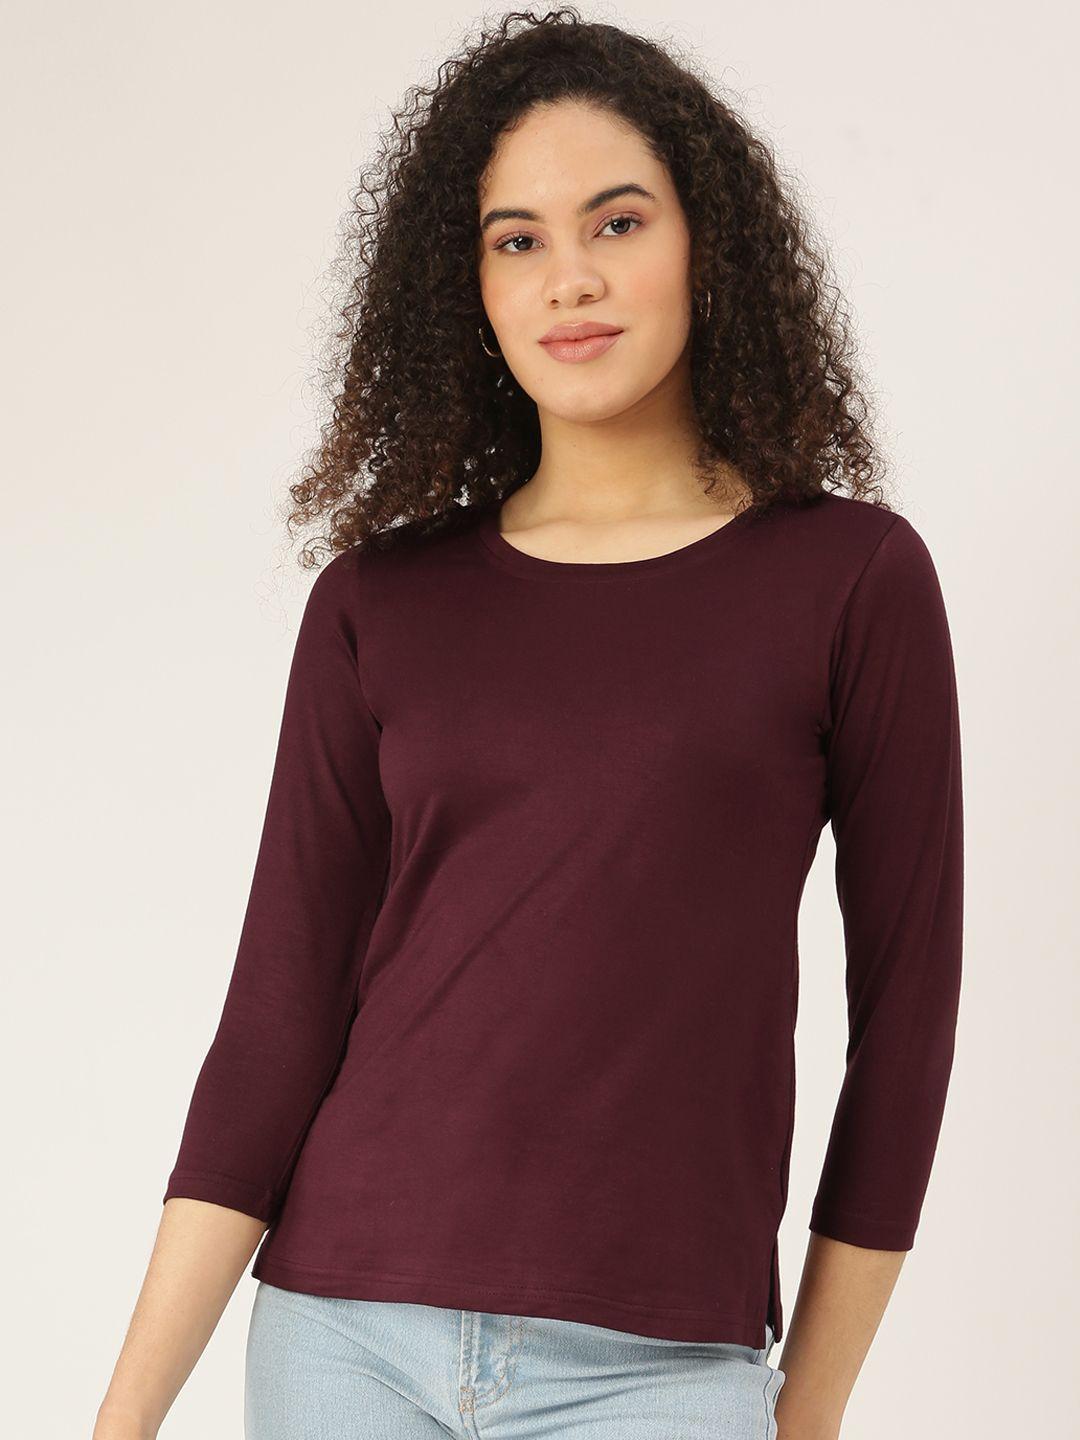 brinns women burgundy t-shirt